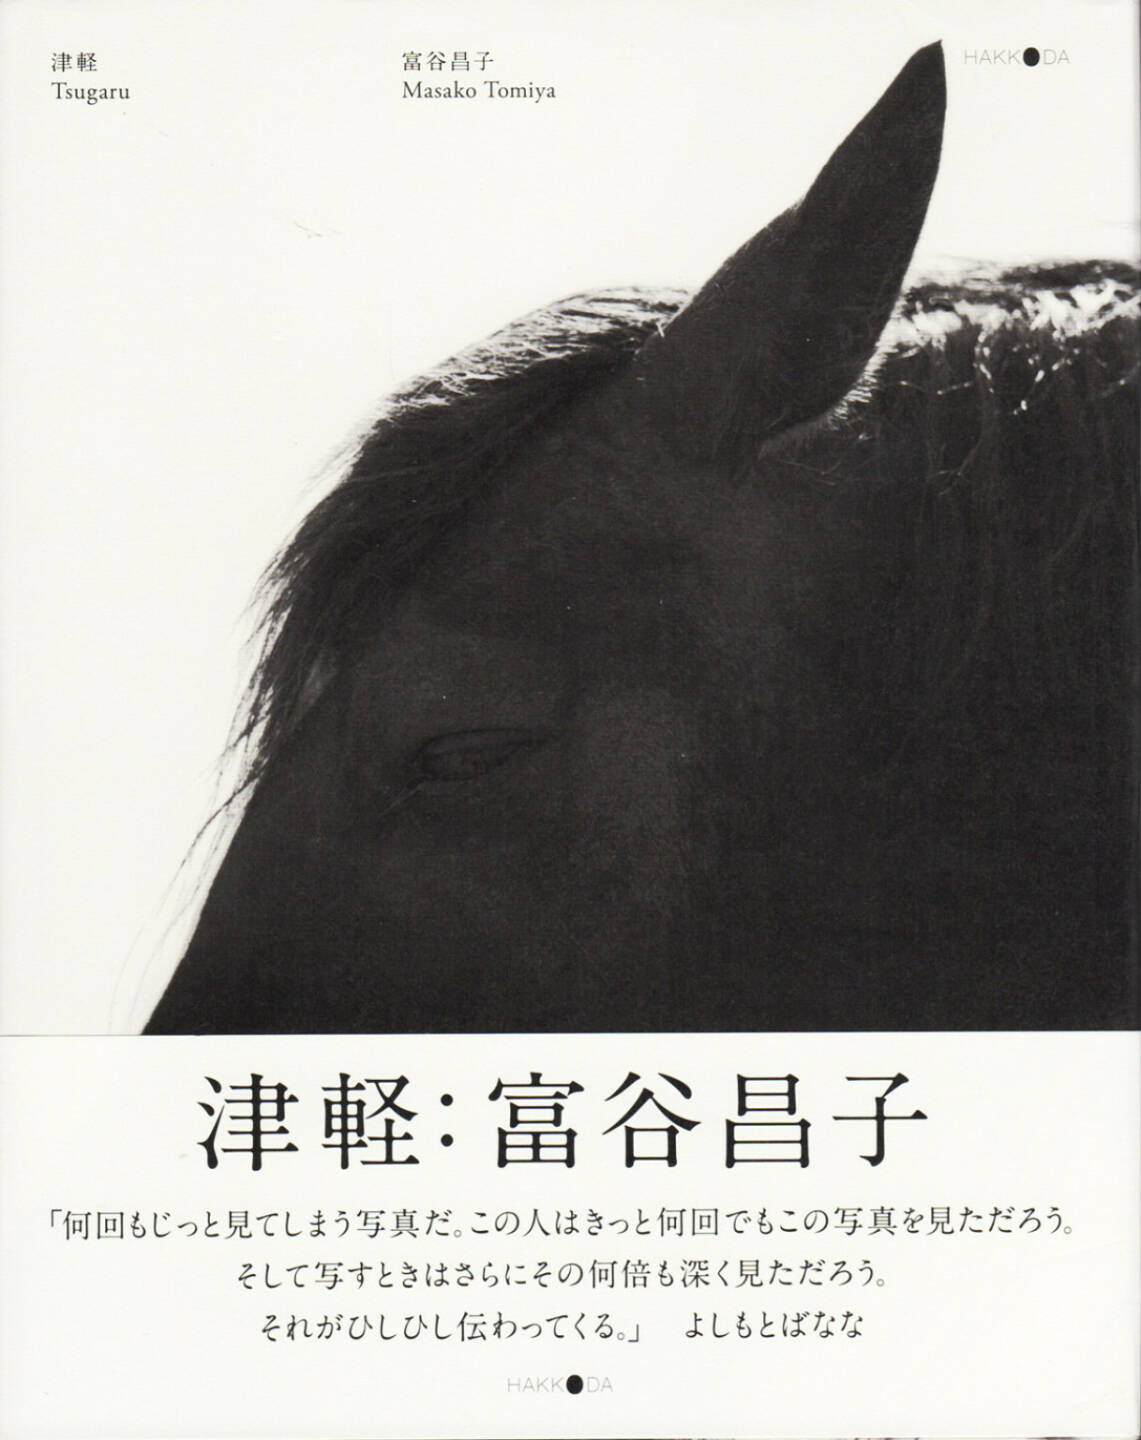 Masako Tomiya - Tsugaru 津軽, Hakkoda 2013, Cover - http://josefchladek.com/book/masako_tomiya_-_tsugaru_津軽